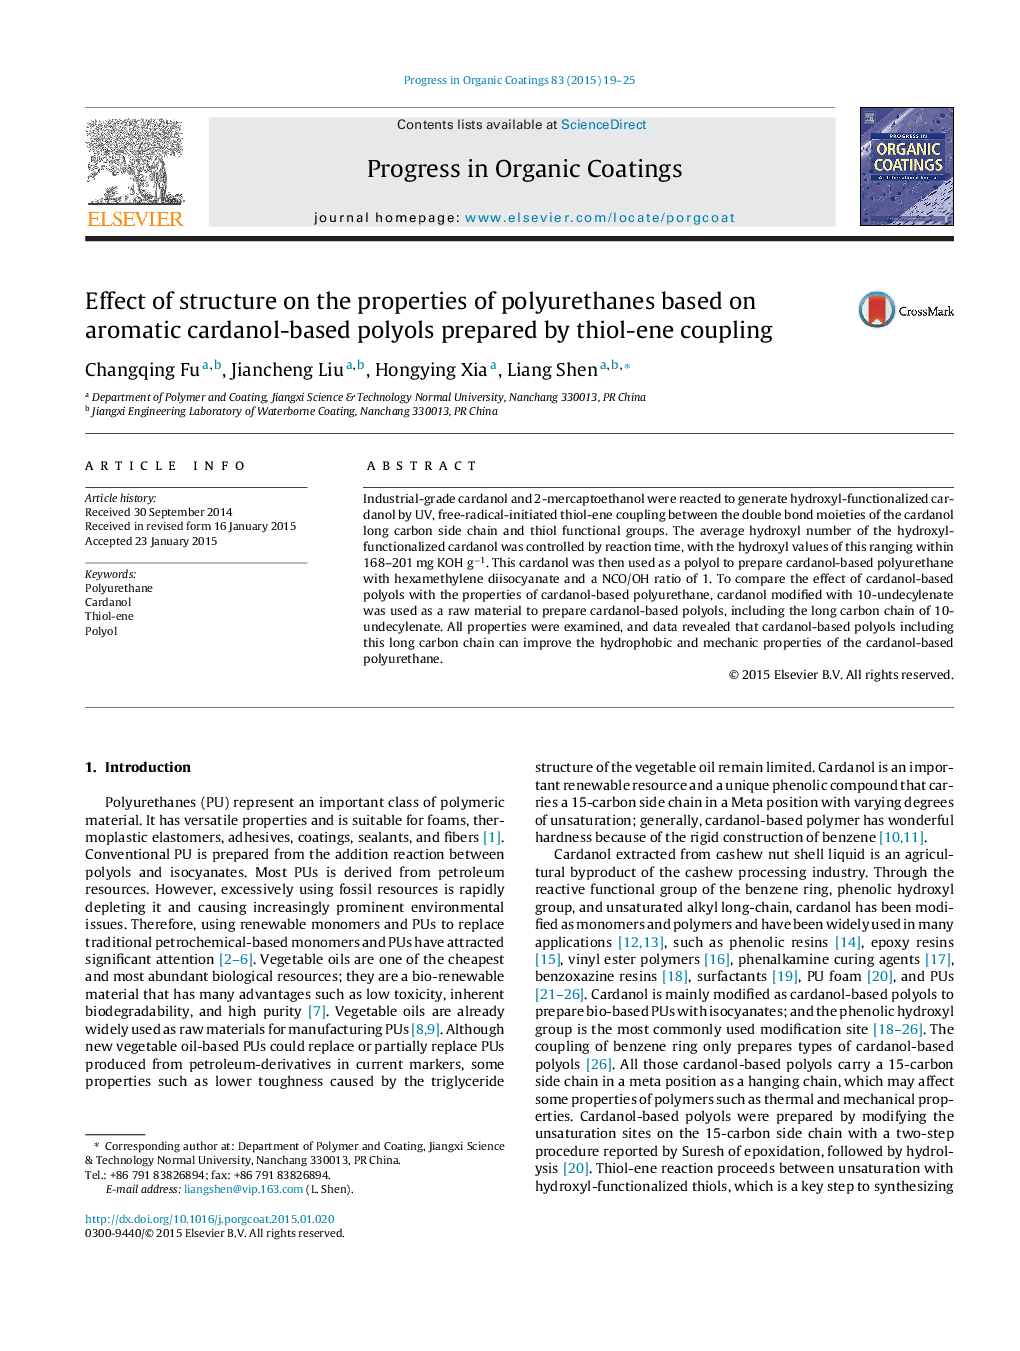 اثر ساختار بر خصوصیات پلی اورتان ها بر پایه پلی اورت های مبتنی بر کارانول معطر تهیه شده توسط اتصال تیوالن 